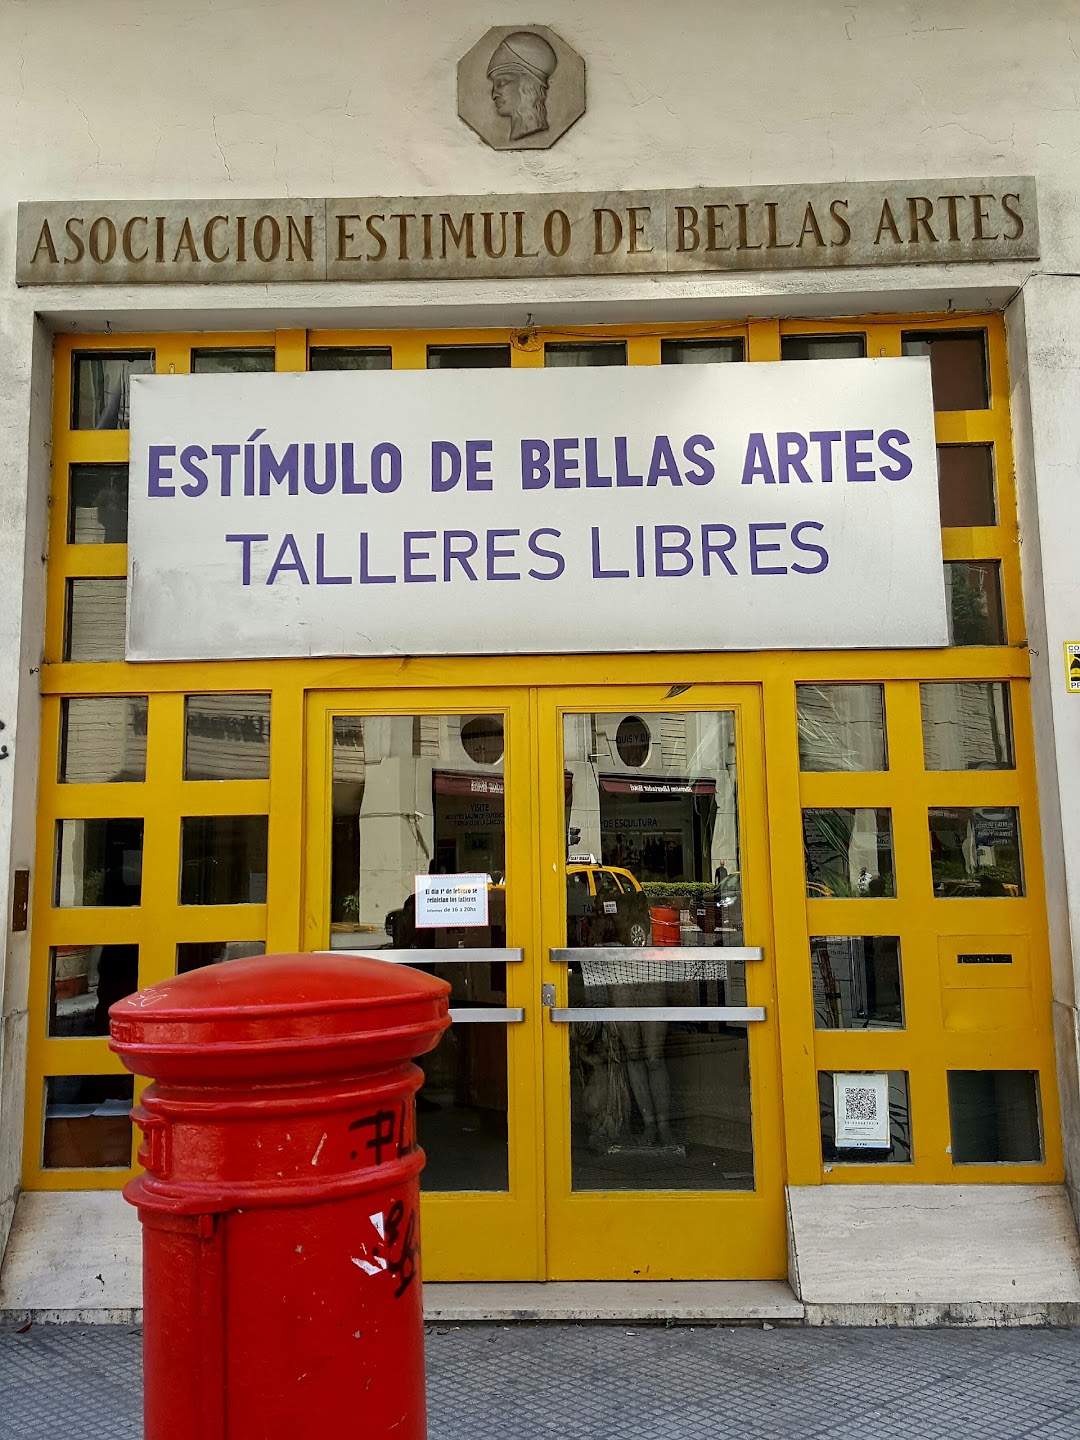 Asociacion Estimulo de Bellas Artes